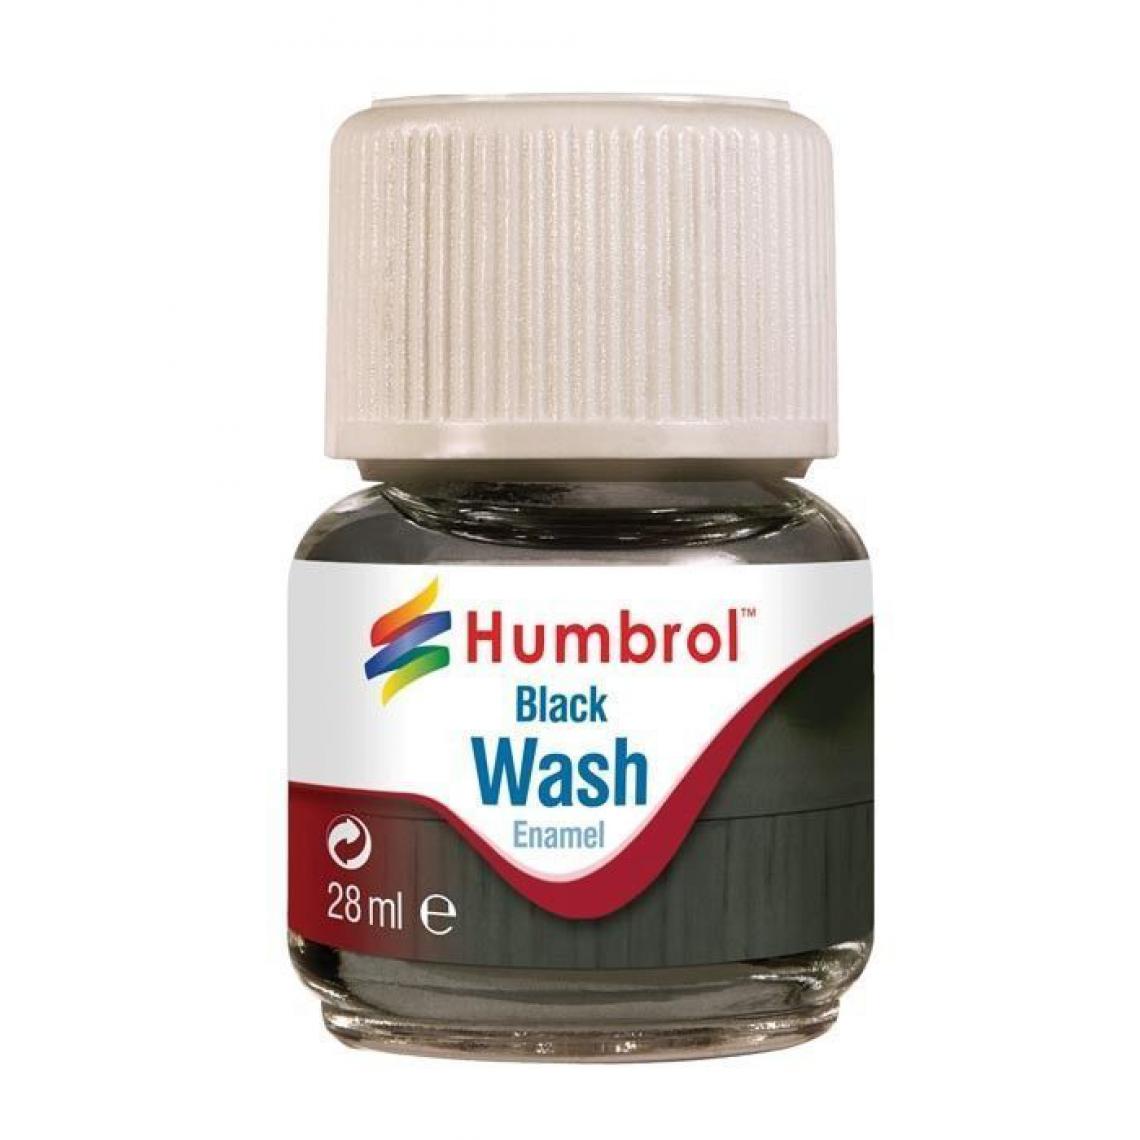 Humbrol - Humbrol Enamel Wash Black 28 ml - Humbrol - Accessoires et pièces